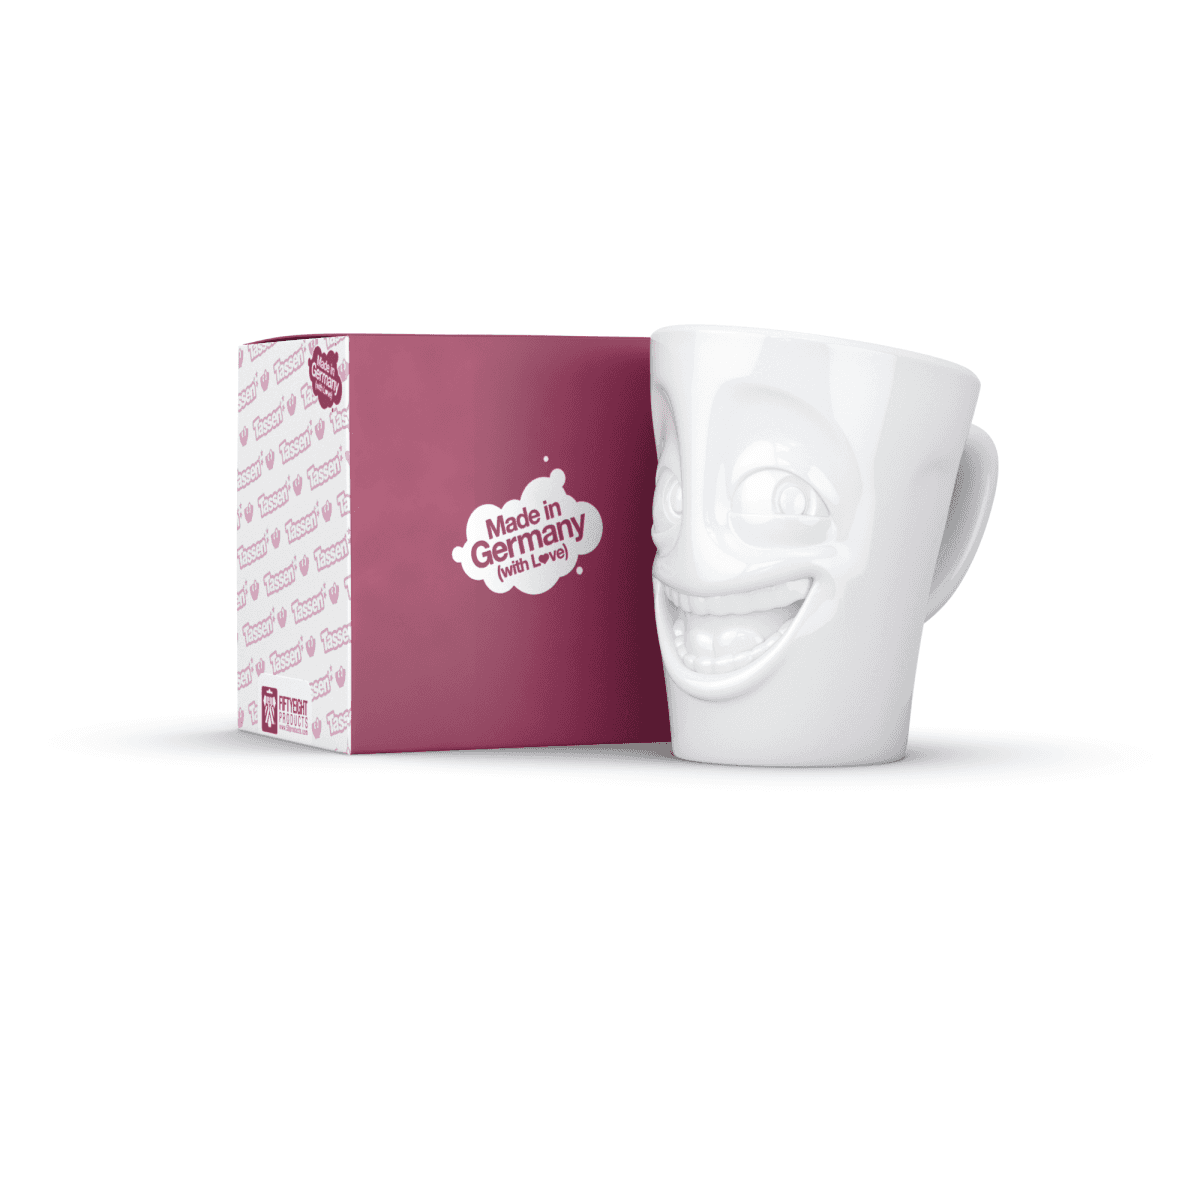 Immagine del prodotto Mug Scherzoso 3D in Porcellana 350 ml con Manico | TASSEN By Fiftyeight Products